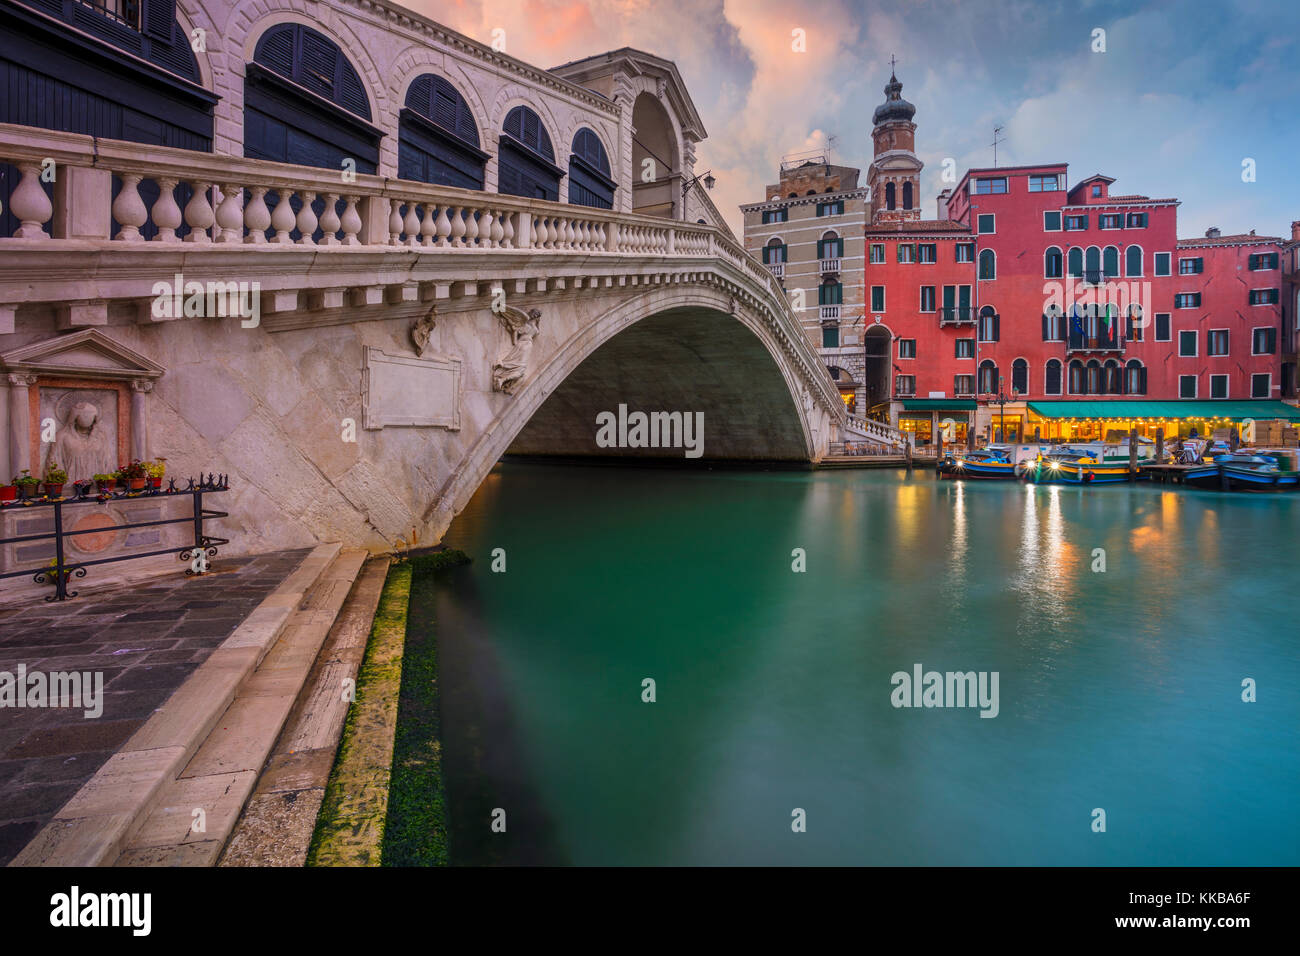 Venise. cityscape image de Venise avec le célèbre pont du Rialto et le grand canal. Banque D'Images